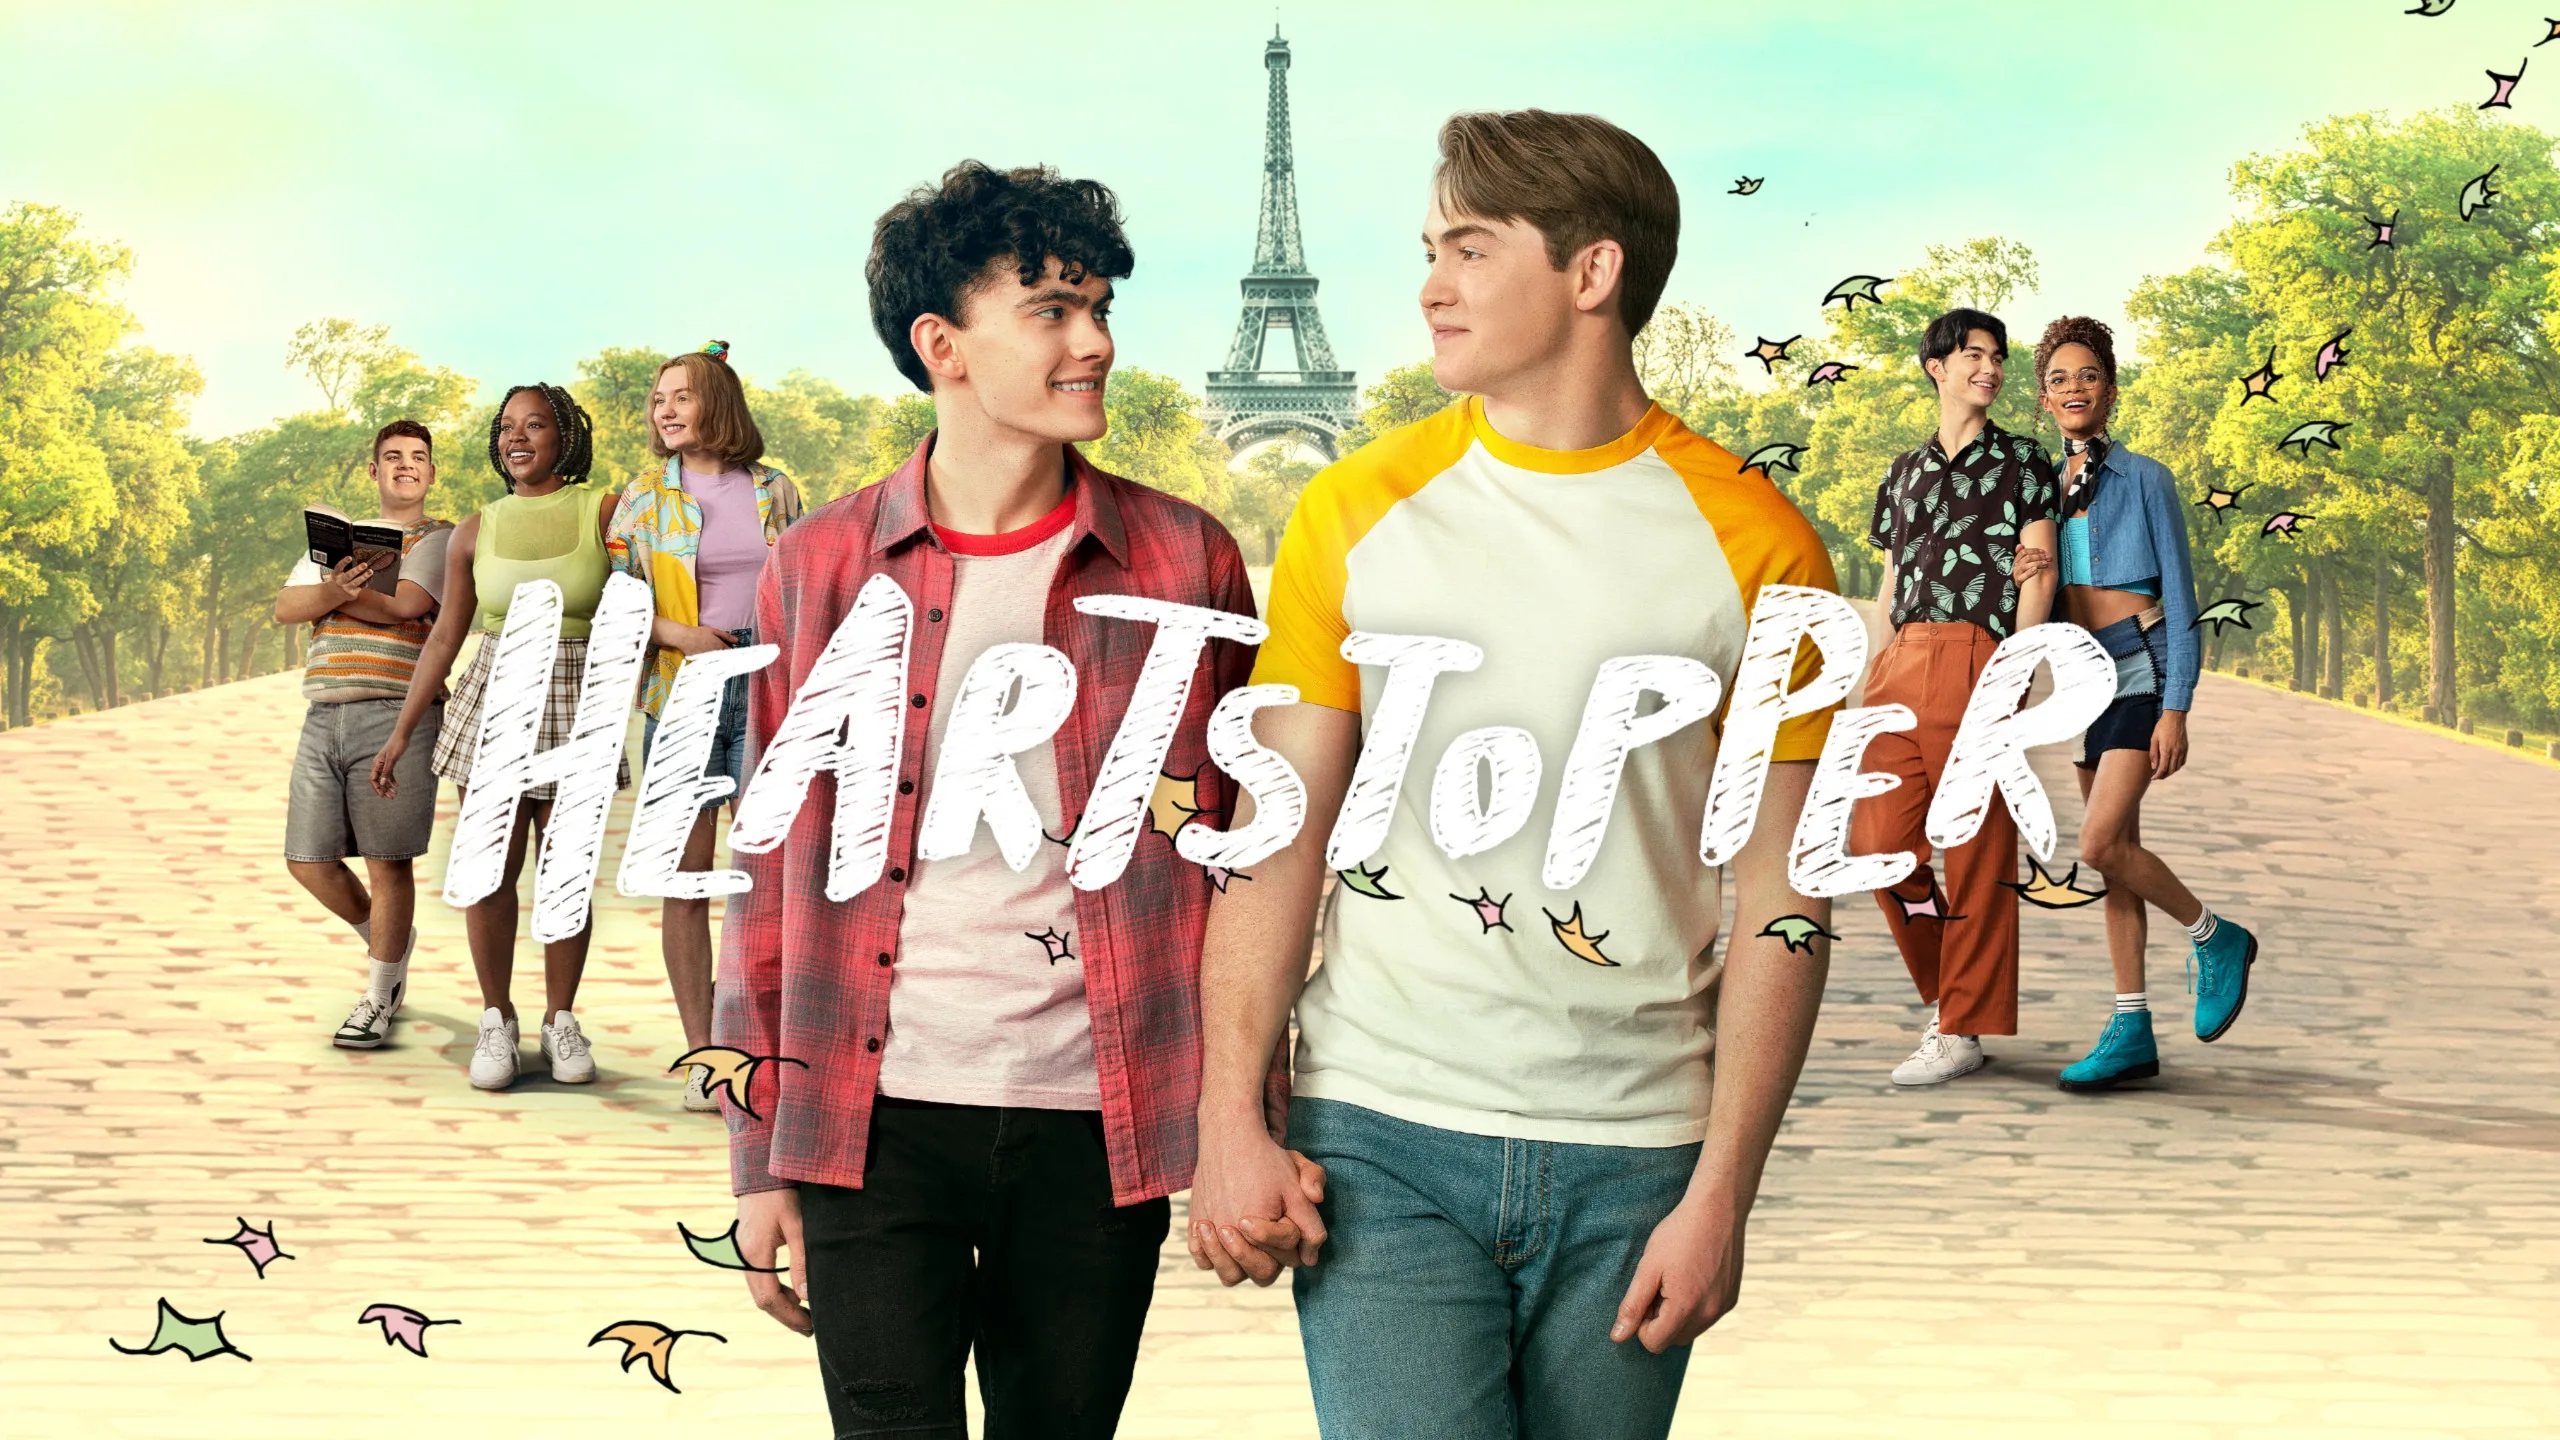 Trailer: Nick precisa assumir namoro com Charlie na 2ª temporada de "Heartstopper"